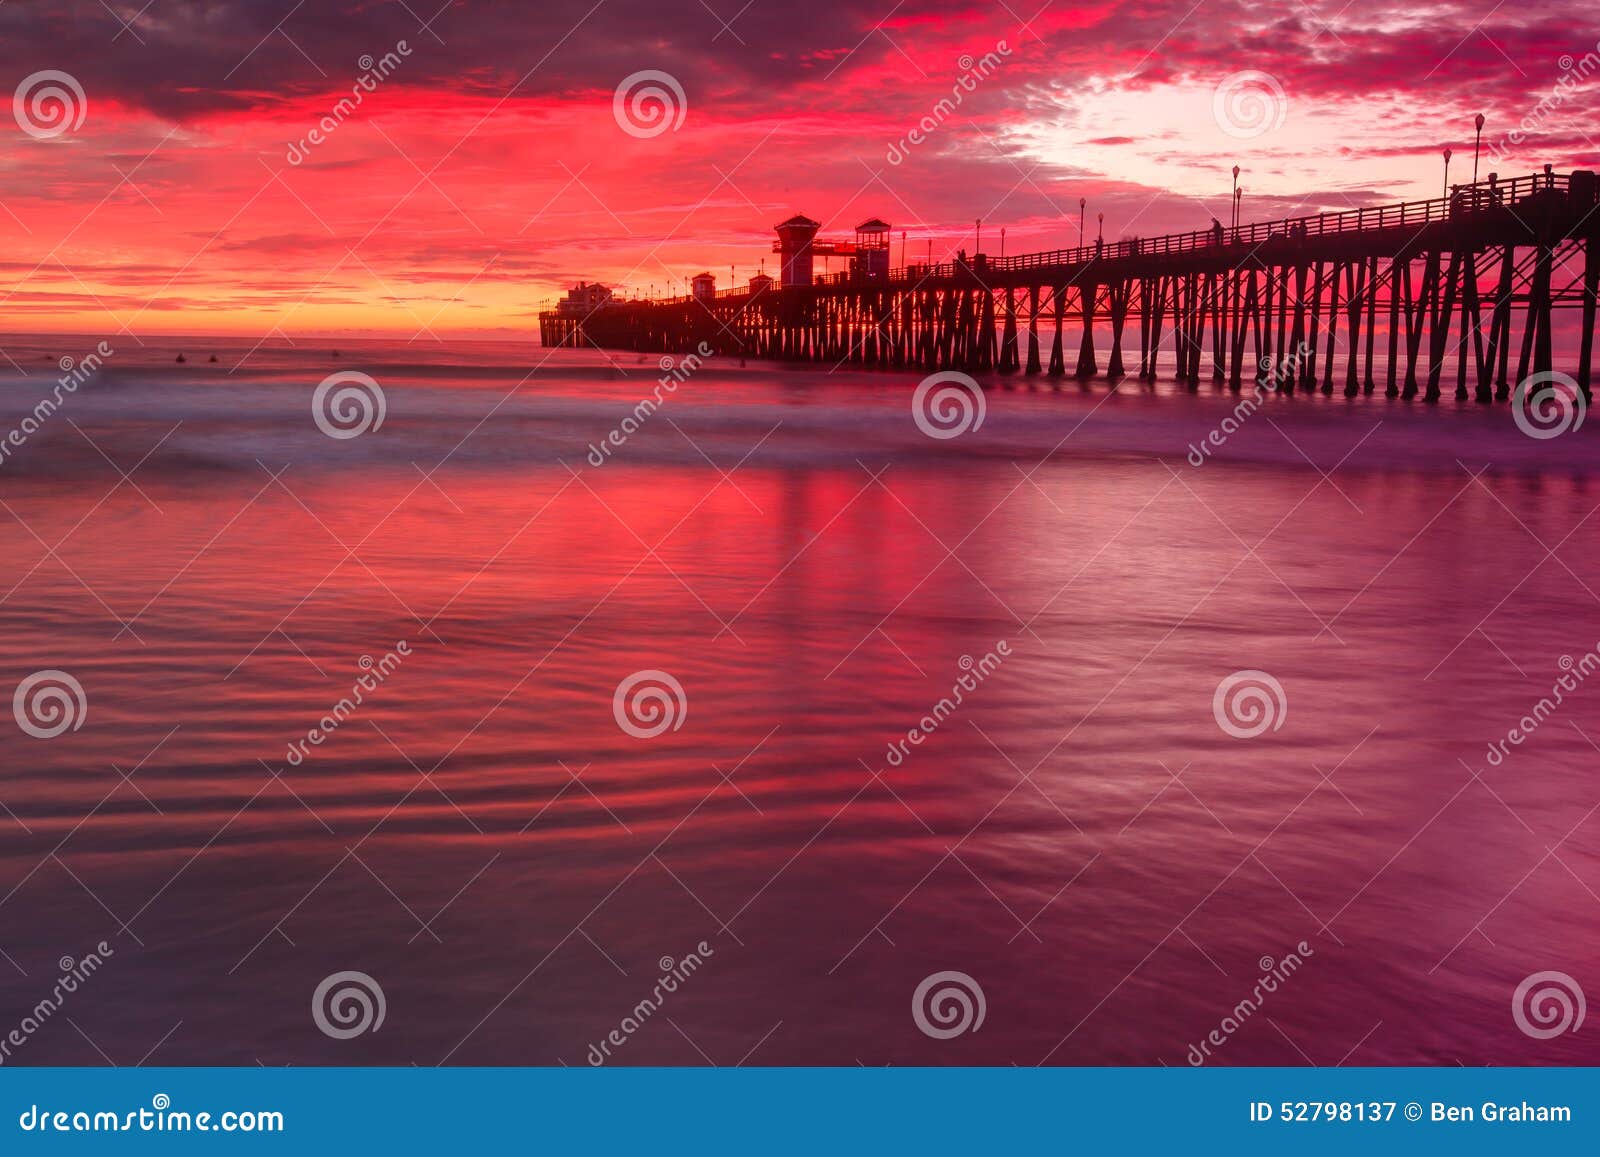 oceanside pier sunset